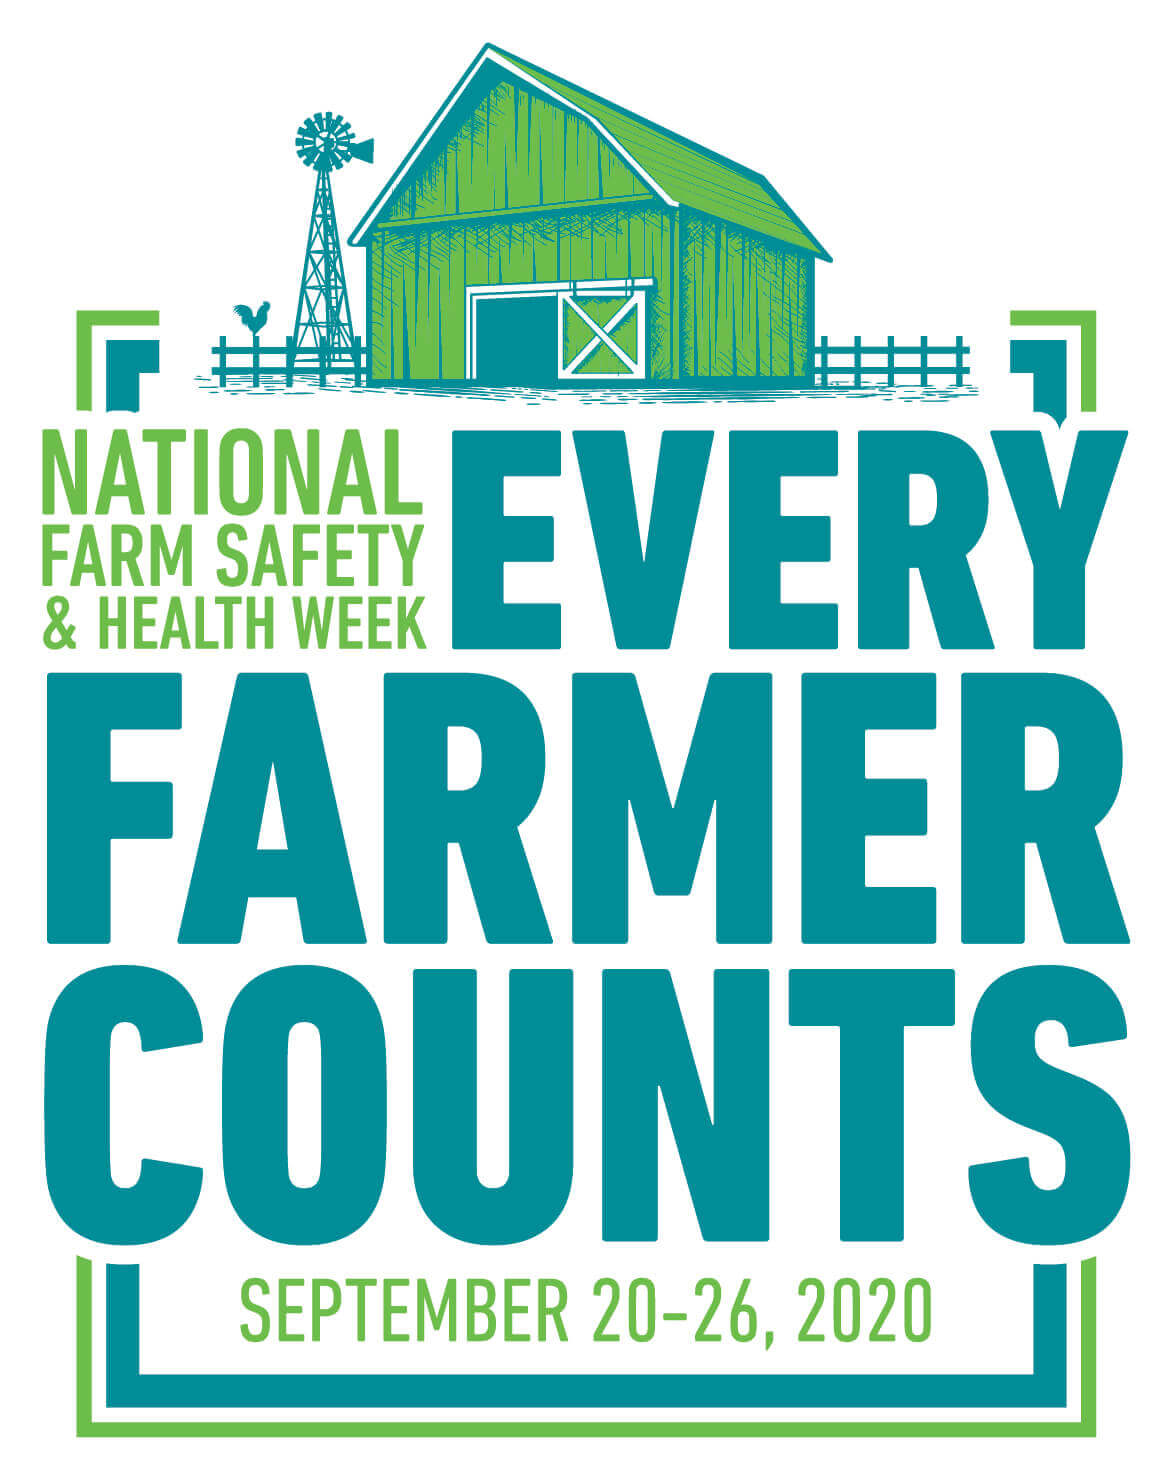 National Farm Safety & Health Week 2020